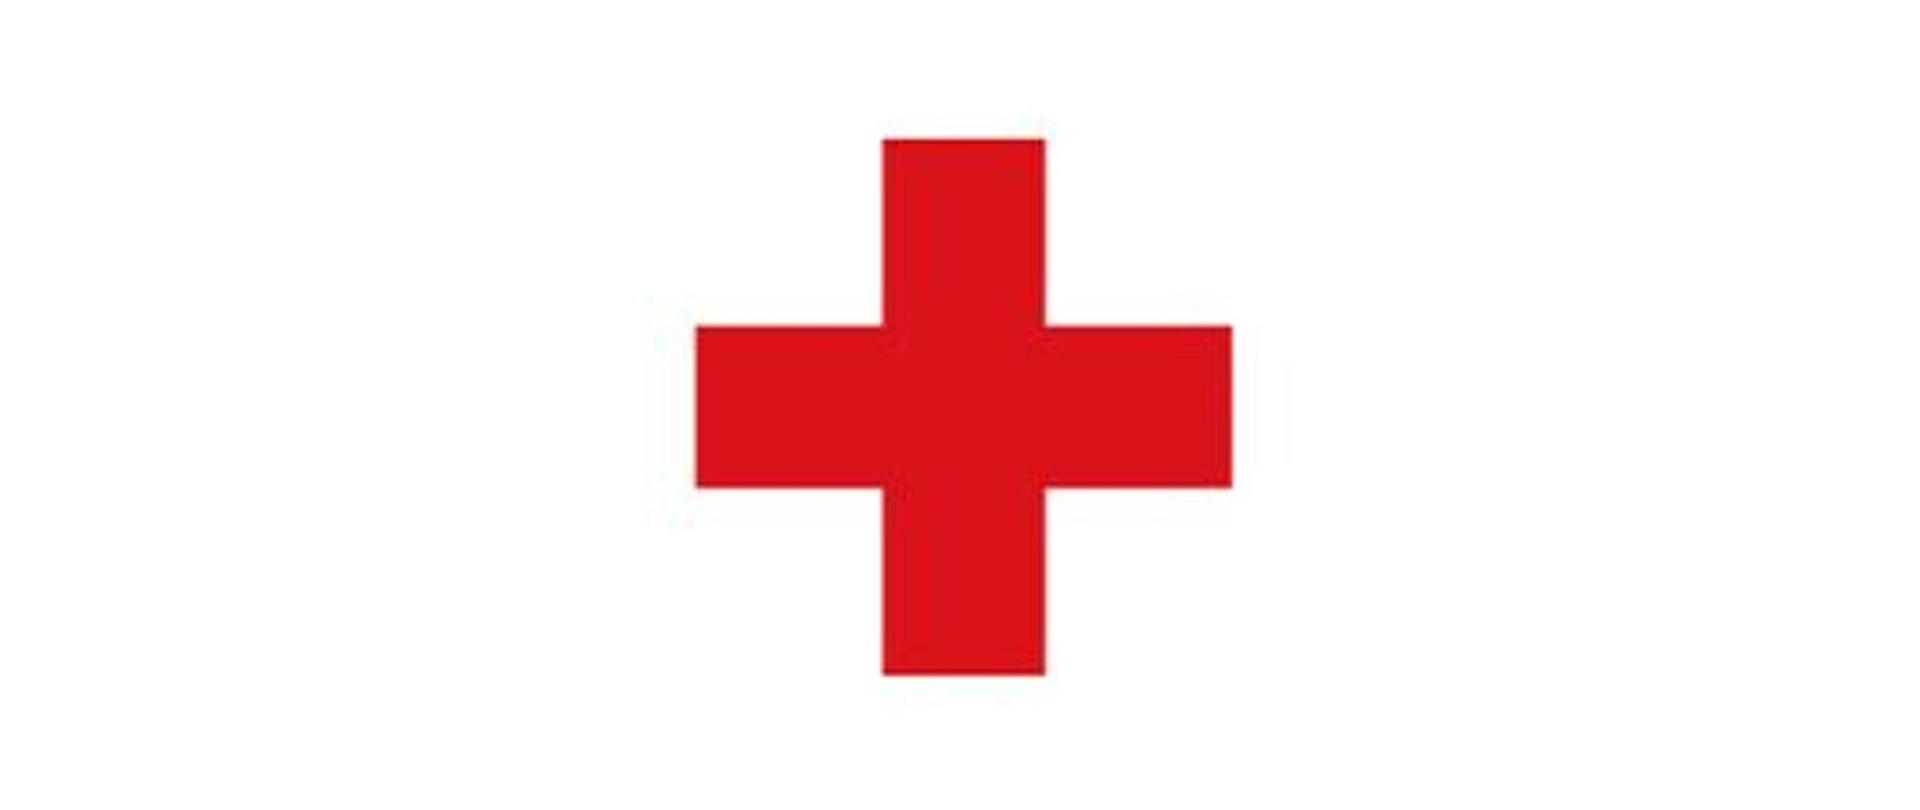 Zdjęcie przedstawia czerwony krzyż